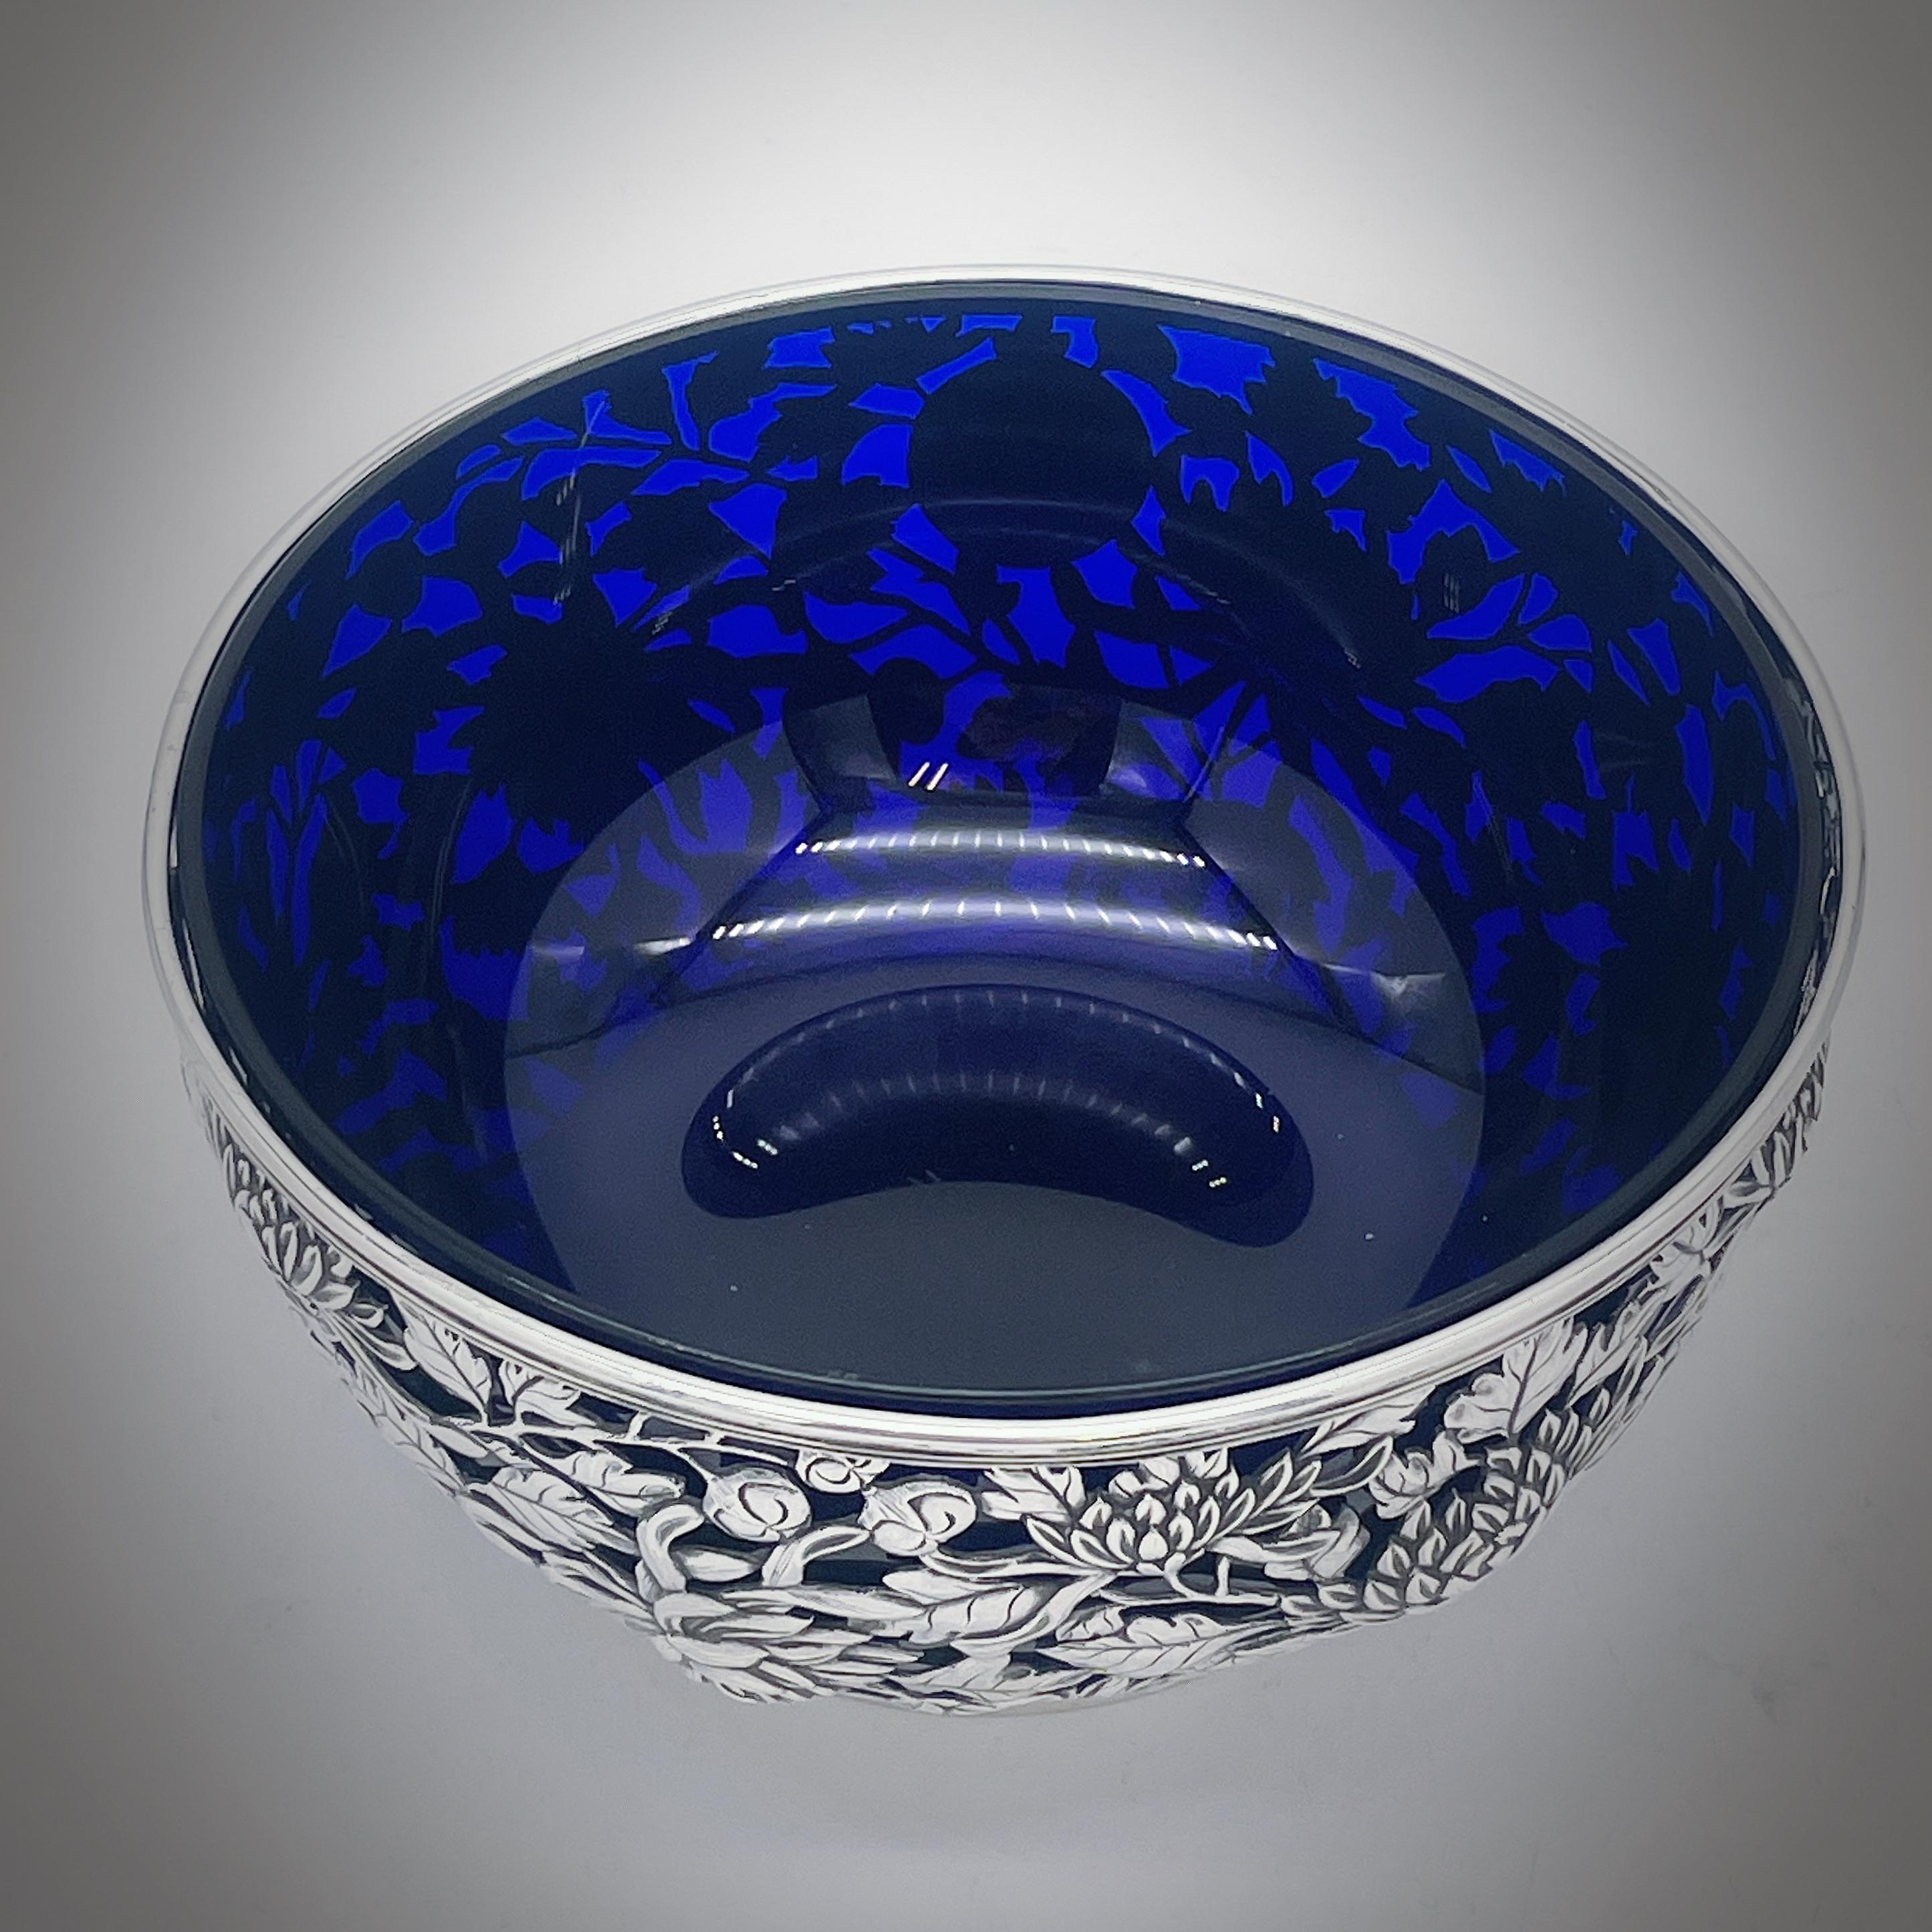 Eine chinesische Export-Silberschale CIRCA 1890, mit späterer blauer Glaseinlage. Die Schale ist mit einem wunderbar detaillierten Chrysanthemen-Dekor durchbrochen, hat eine runde Kartusche und steht auf einem schlichten Spannringfuß. Die Schale